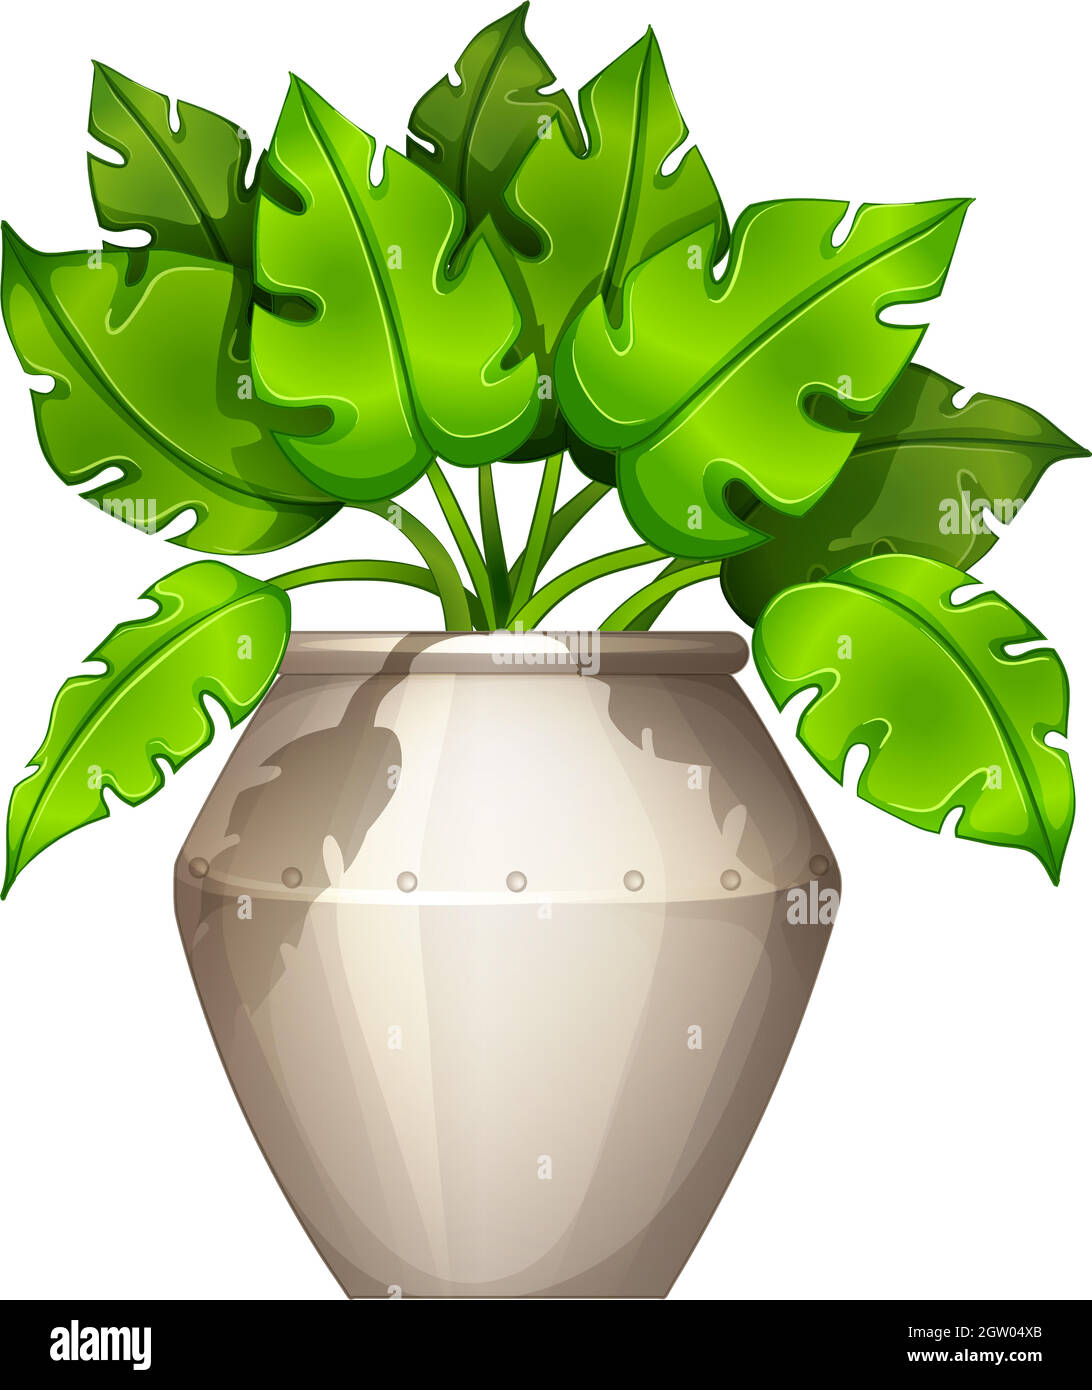 Une plante avec des feuilles en forme de coeur Illustration de Vecteur